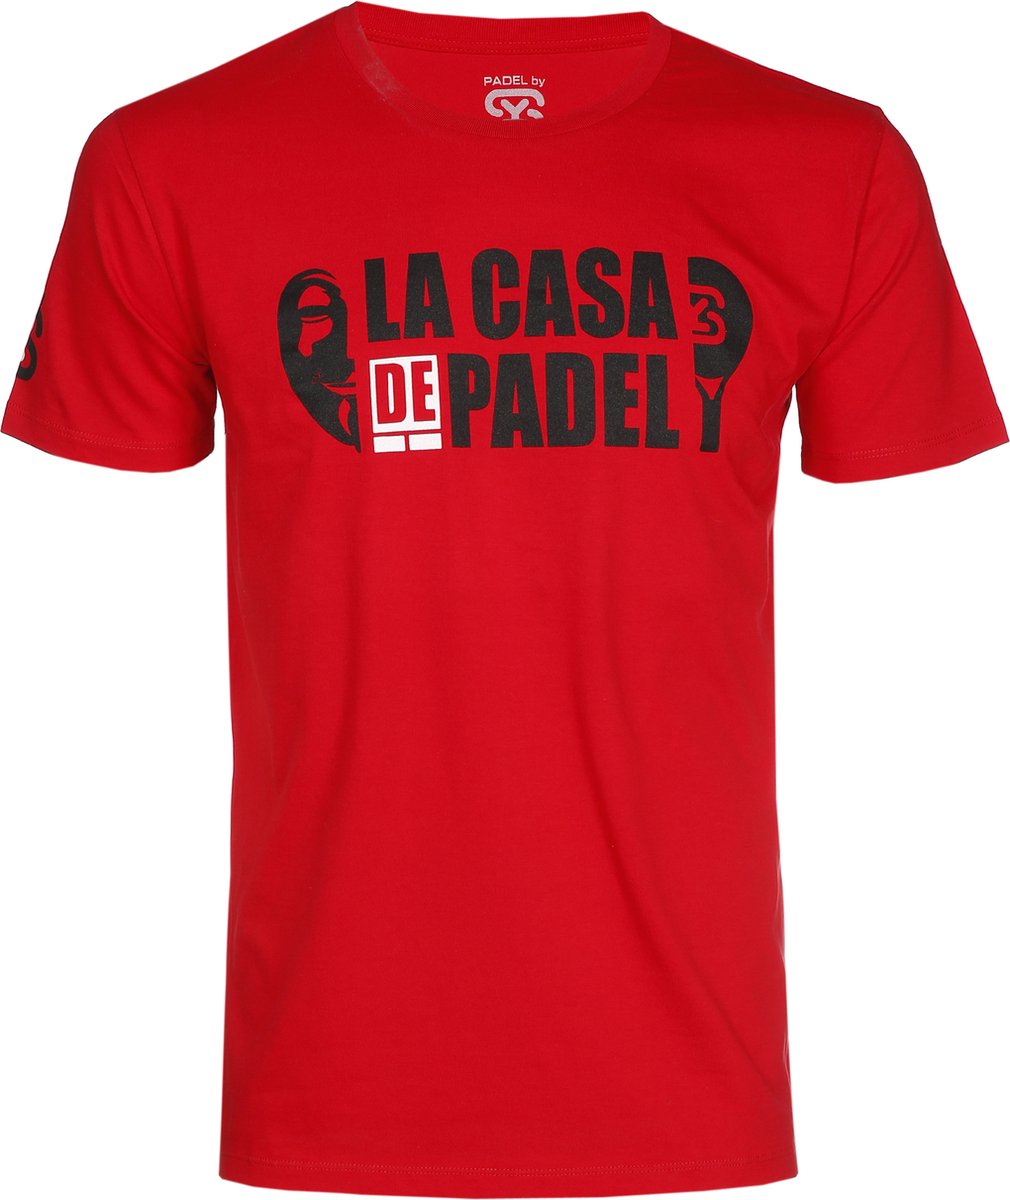 PADELbySY - PADEL - LA CASA DE PADEL - T-SHIRT MEN'S - RED - SIZE XL